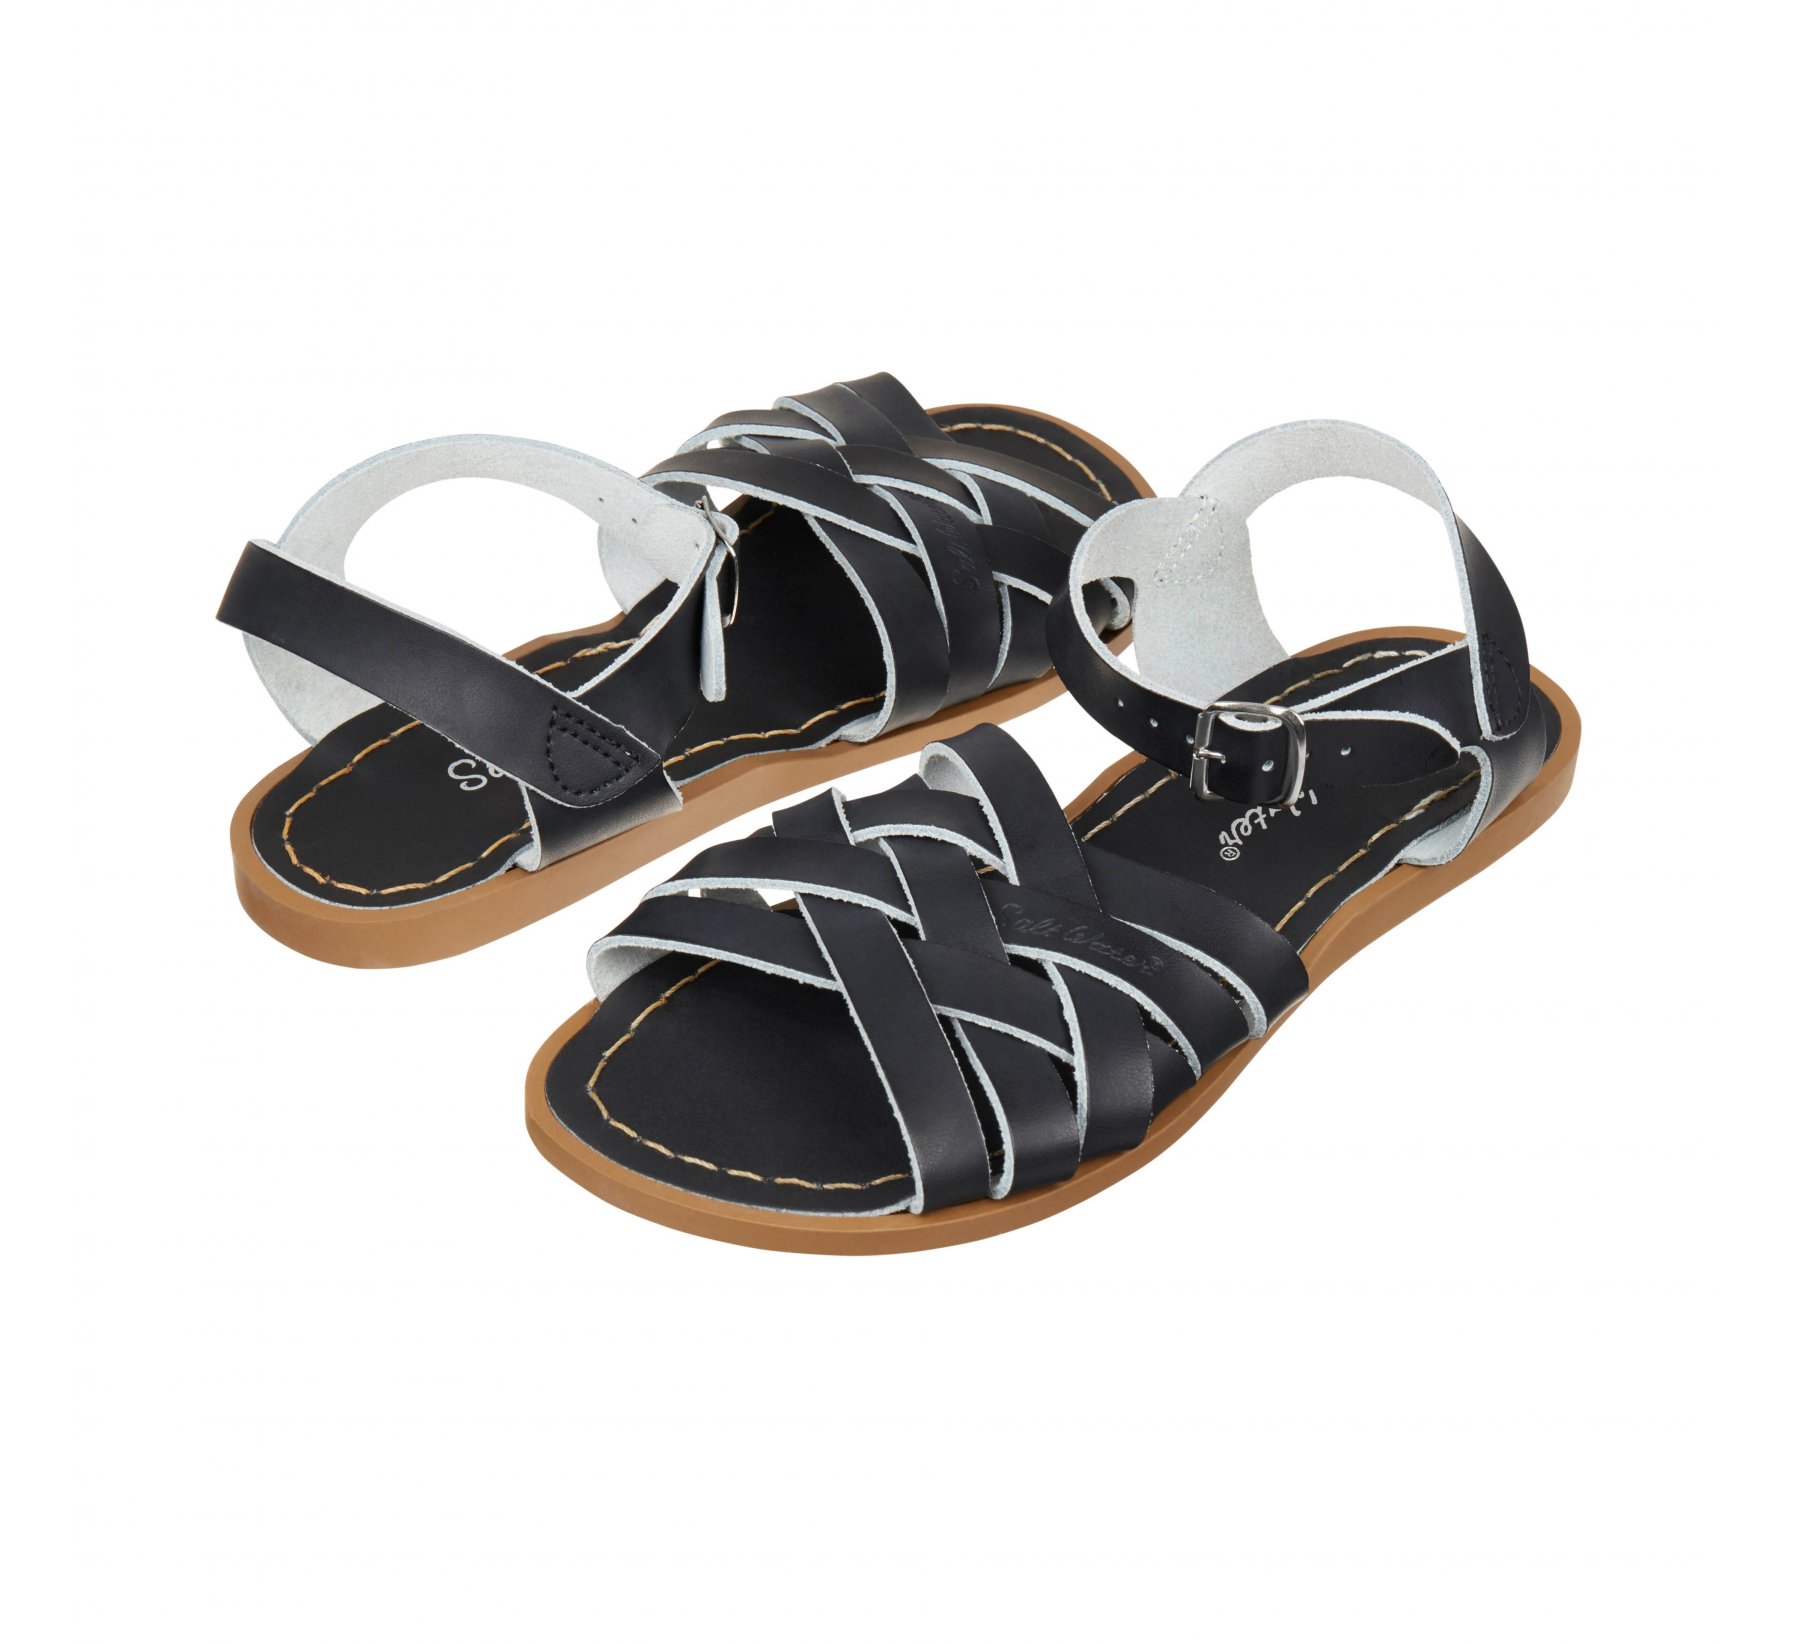 Retro Black Kids Sandals - Salt Water Sandals